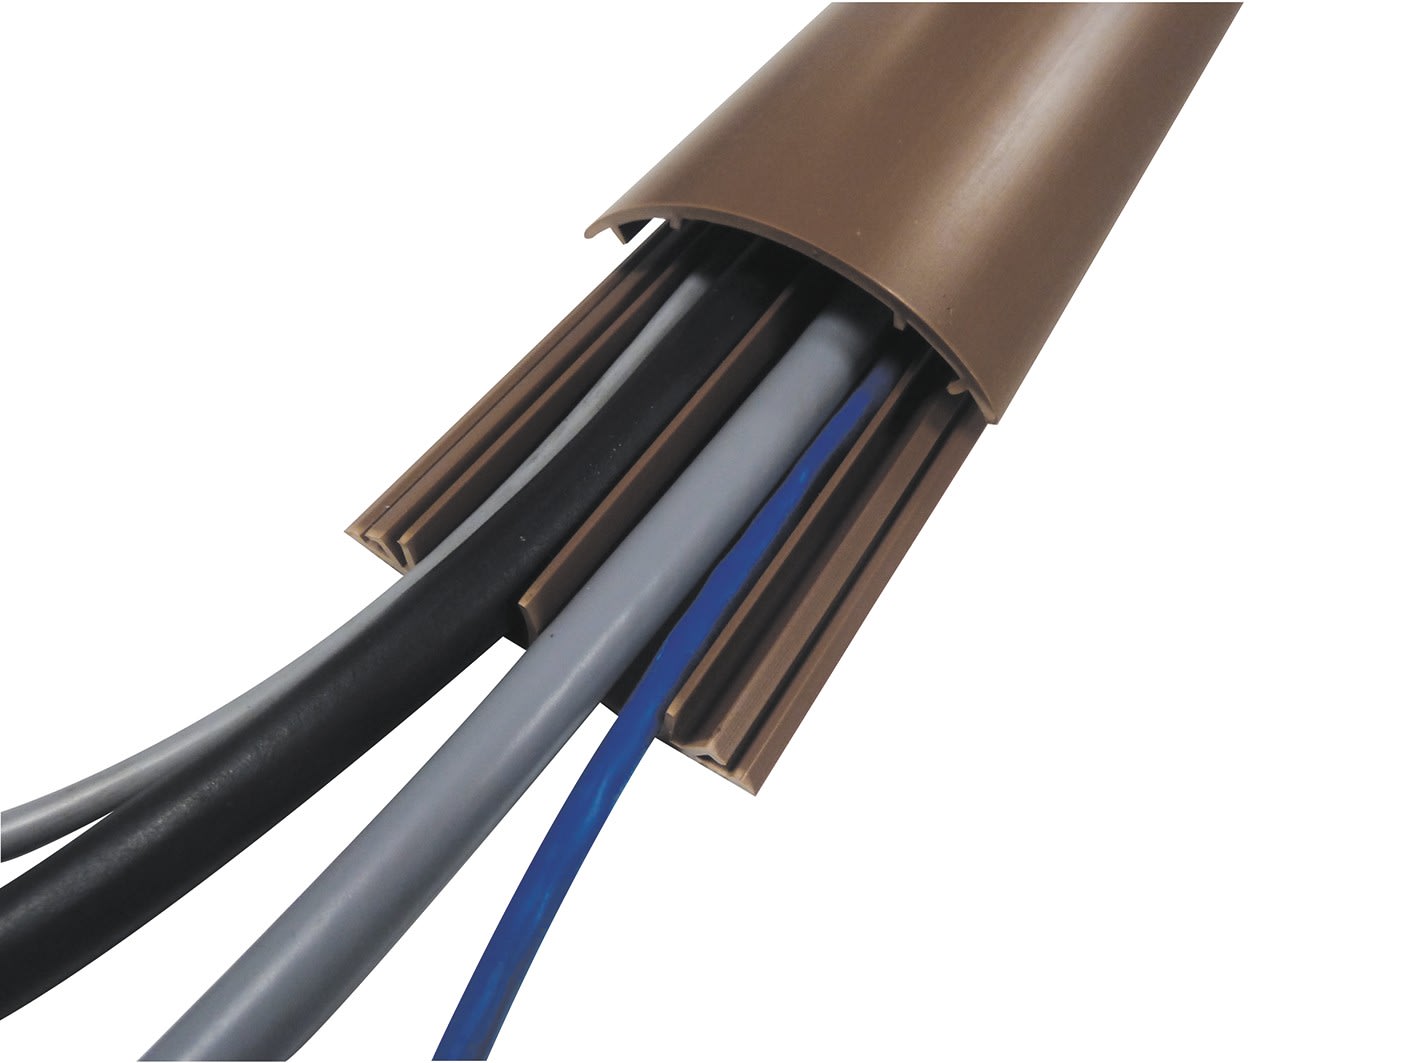 Cable Equipements - PG12 passage de plancher - PVC marron - 2 m - 2 canaux Ø12 mm